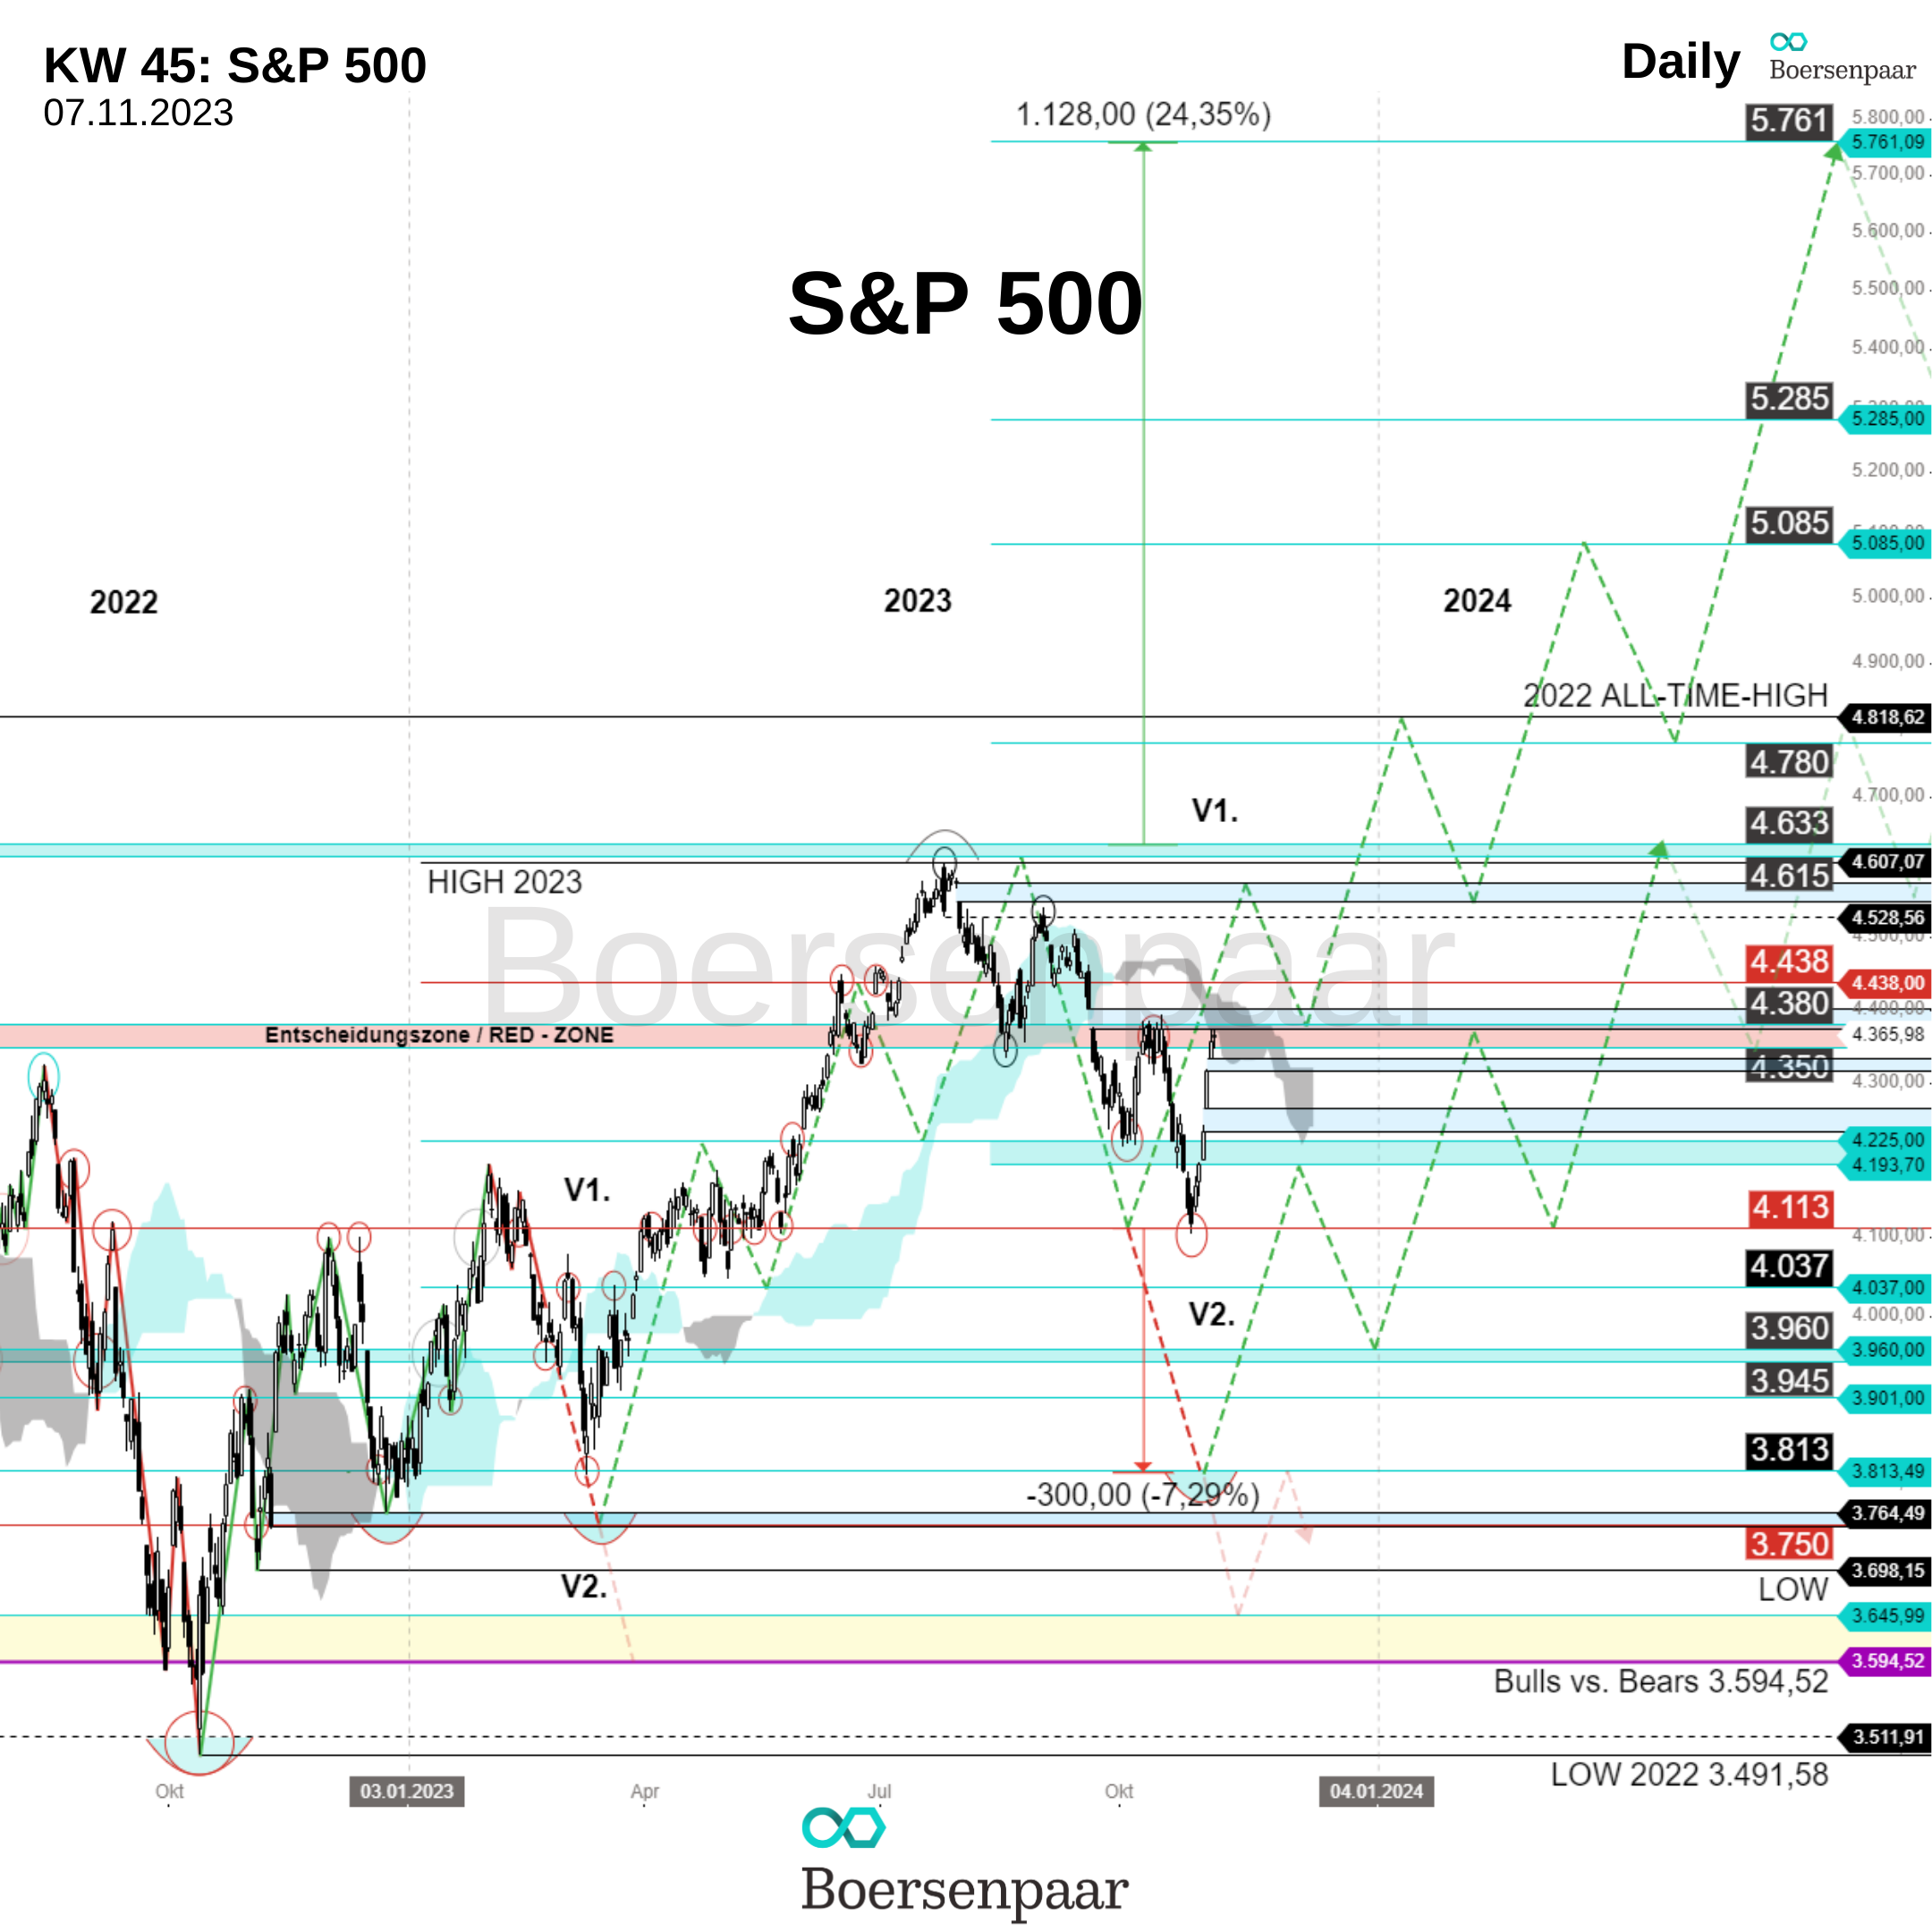 S&P 500 Analyse - KW 45_Boersenpaar_07.11.2023_Bild 2